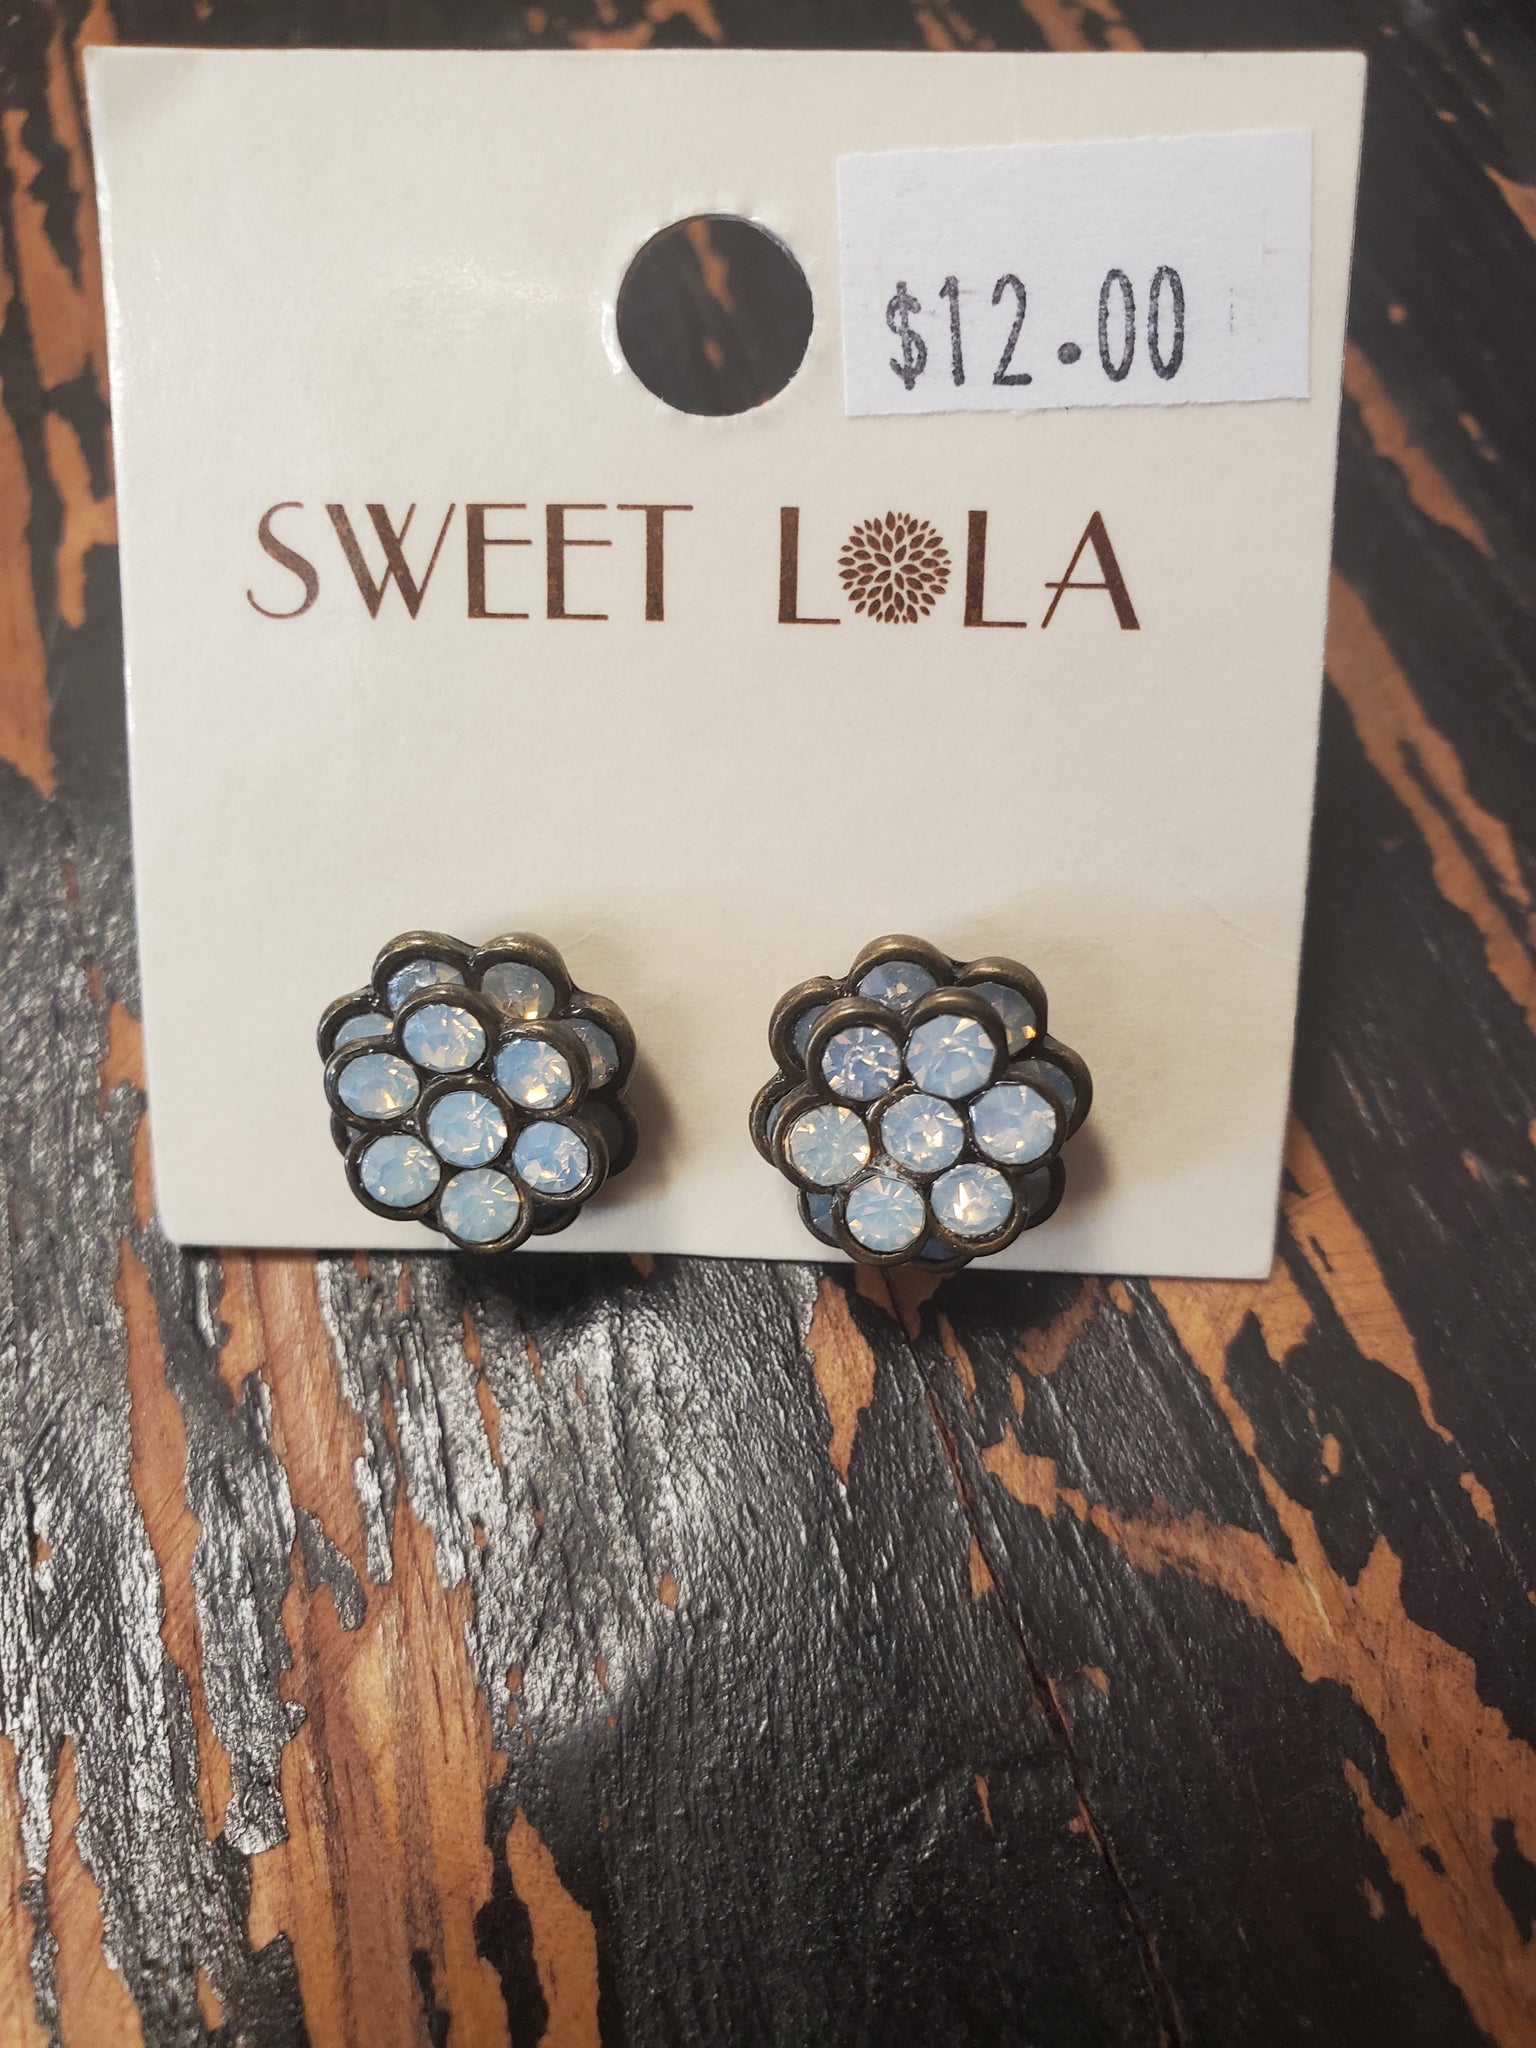 Sweet Lola earrings various